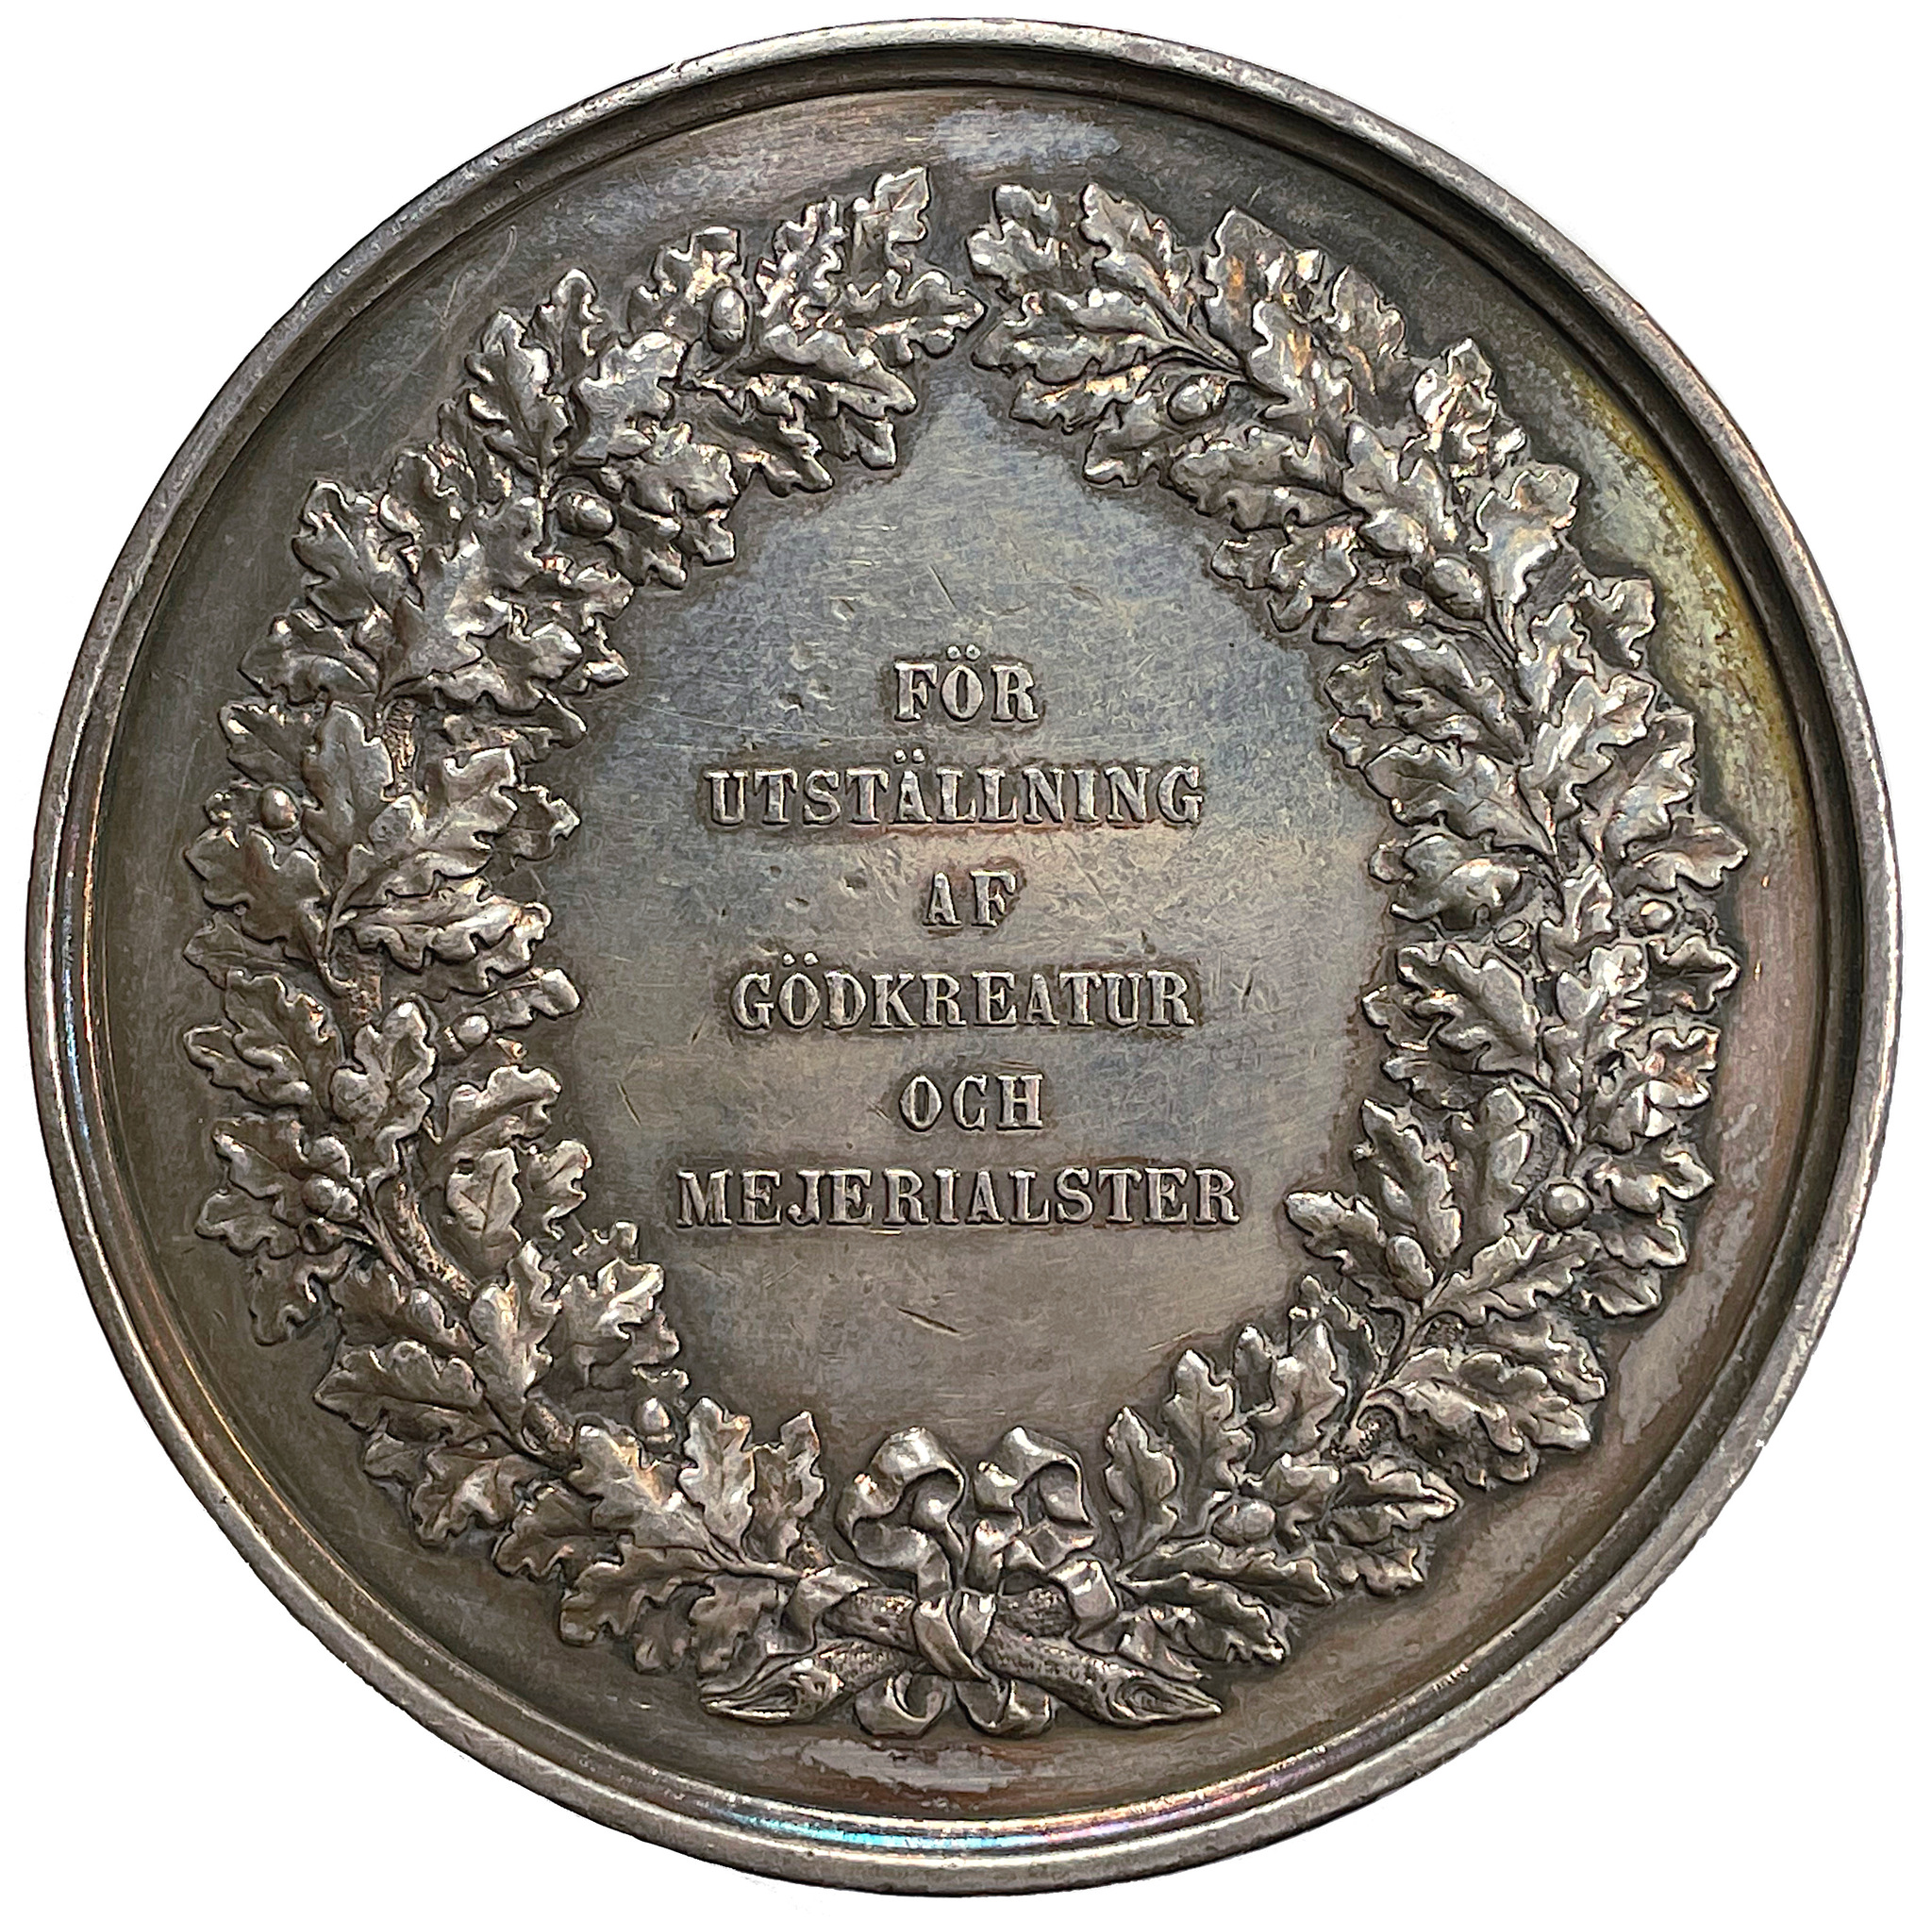 Karl XV - Belöningsmedalj för utställning av gödkreatur och mejerialster (1866) av Lea Ahlborn